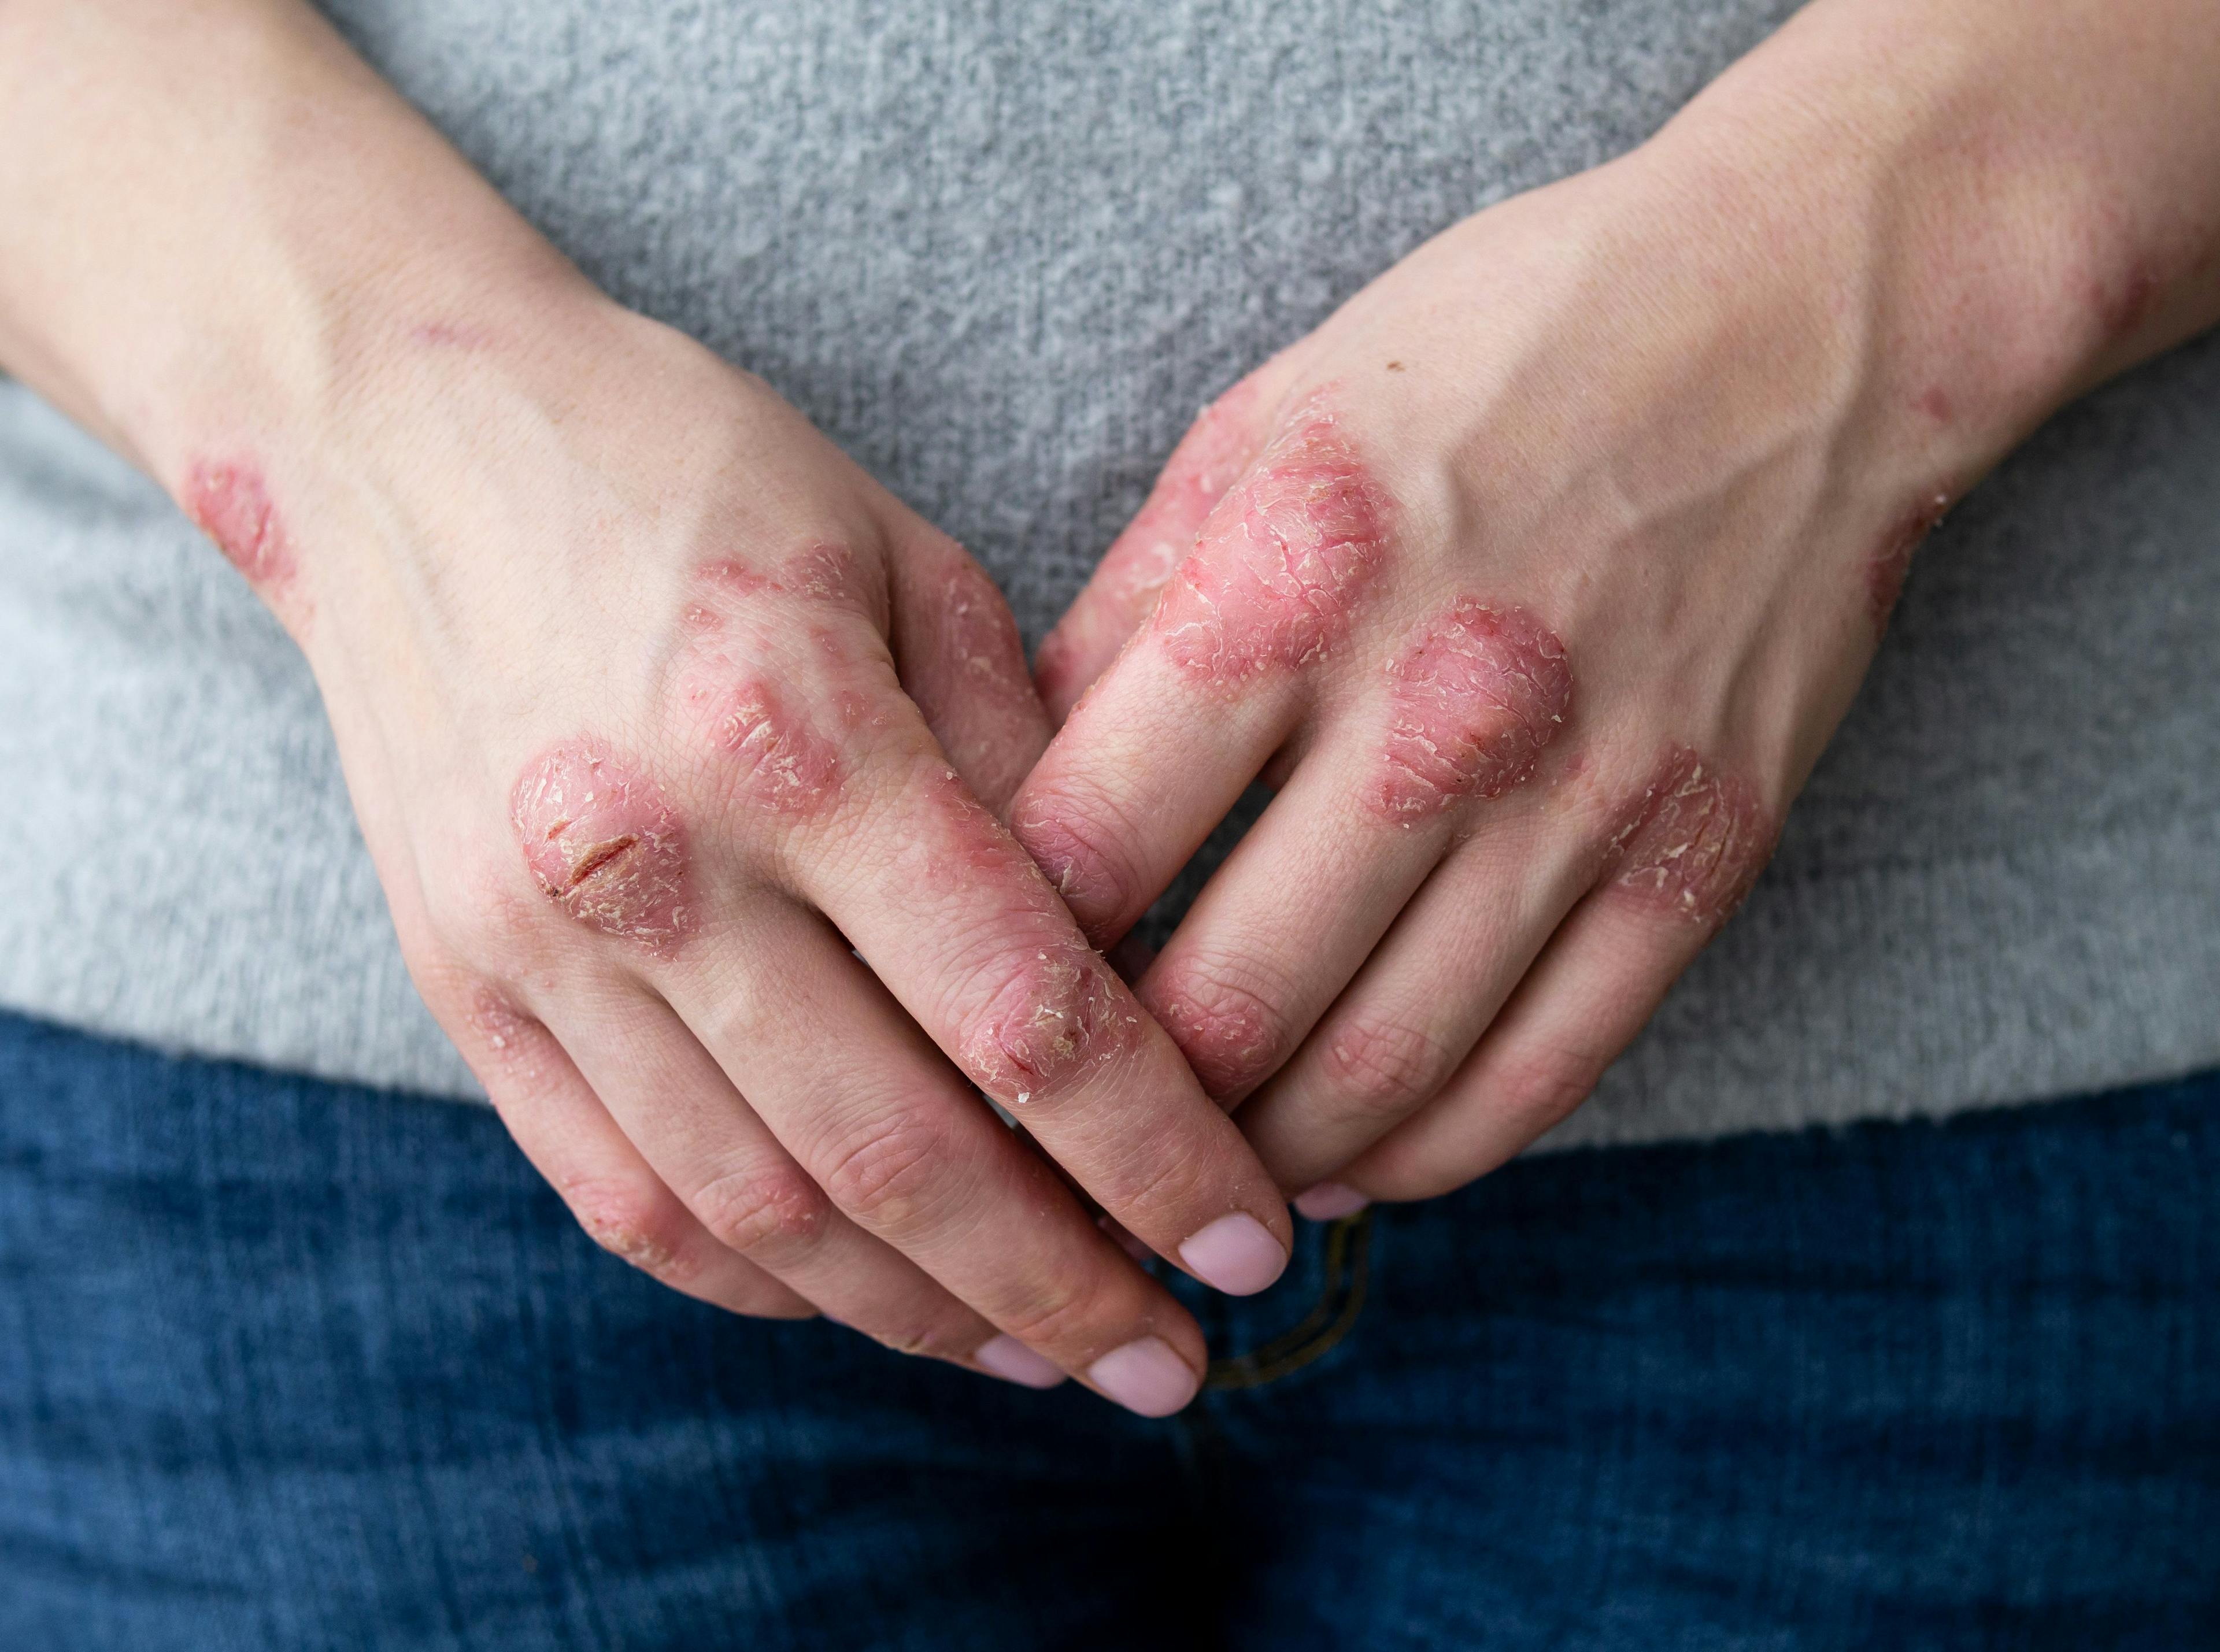 Hands of patient with psoriasis | Image Credit: © IIIRusya - stock.adobe.com